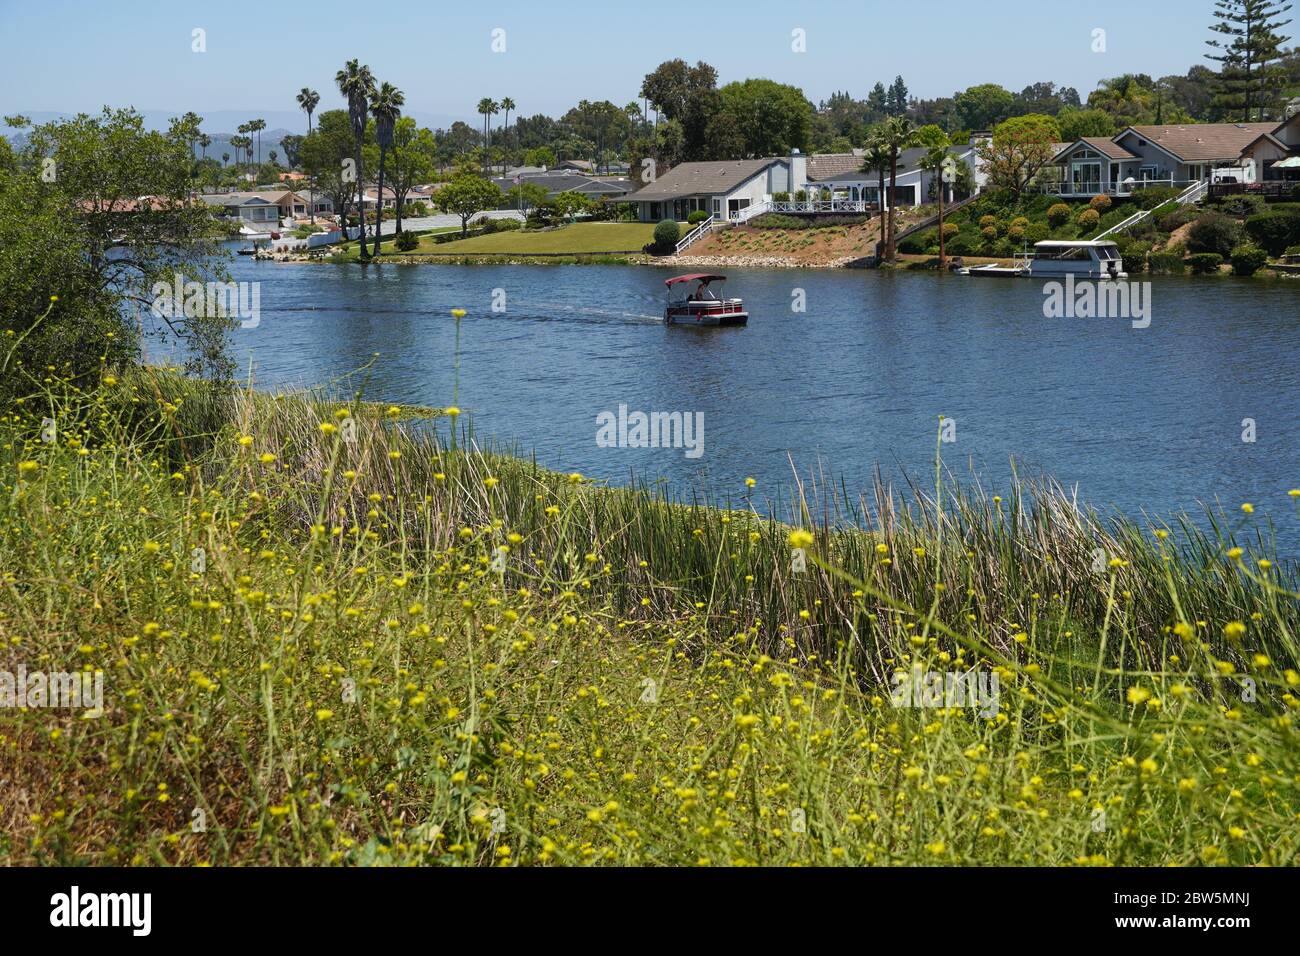 Pontile che scende lungo il lago San Marcos passando le residenze in un pomeriggio soleggiato, visto da una costa piena di fiori gialli selvatici. Foto Stock